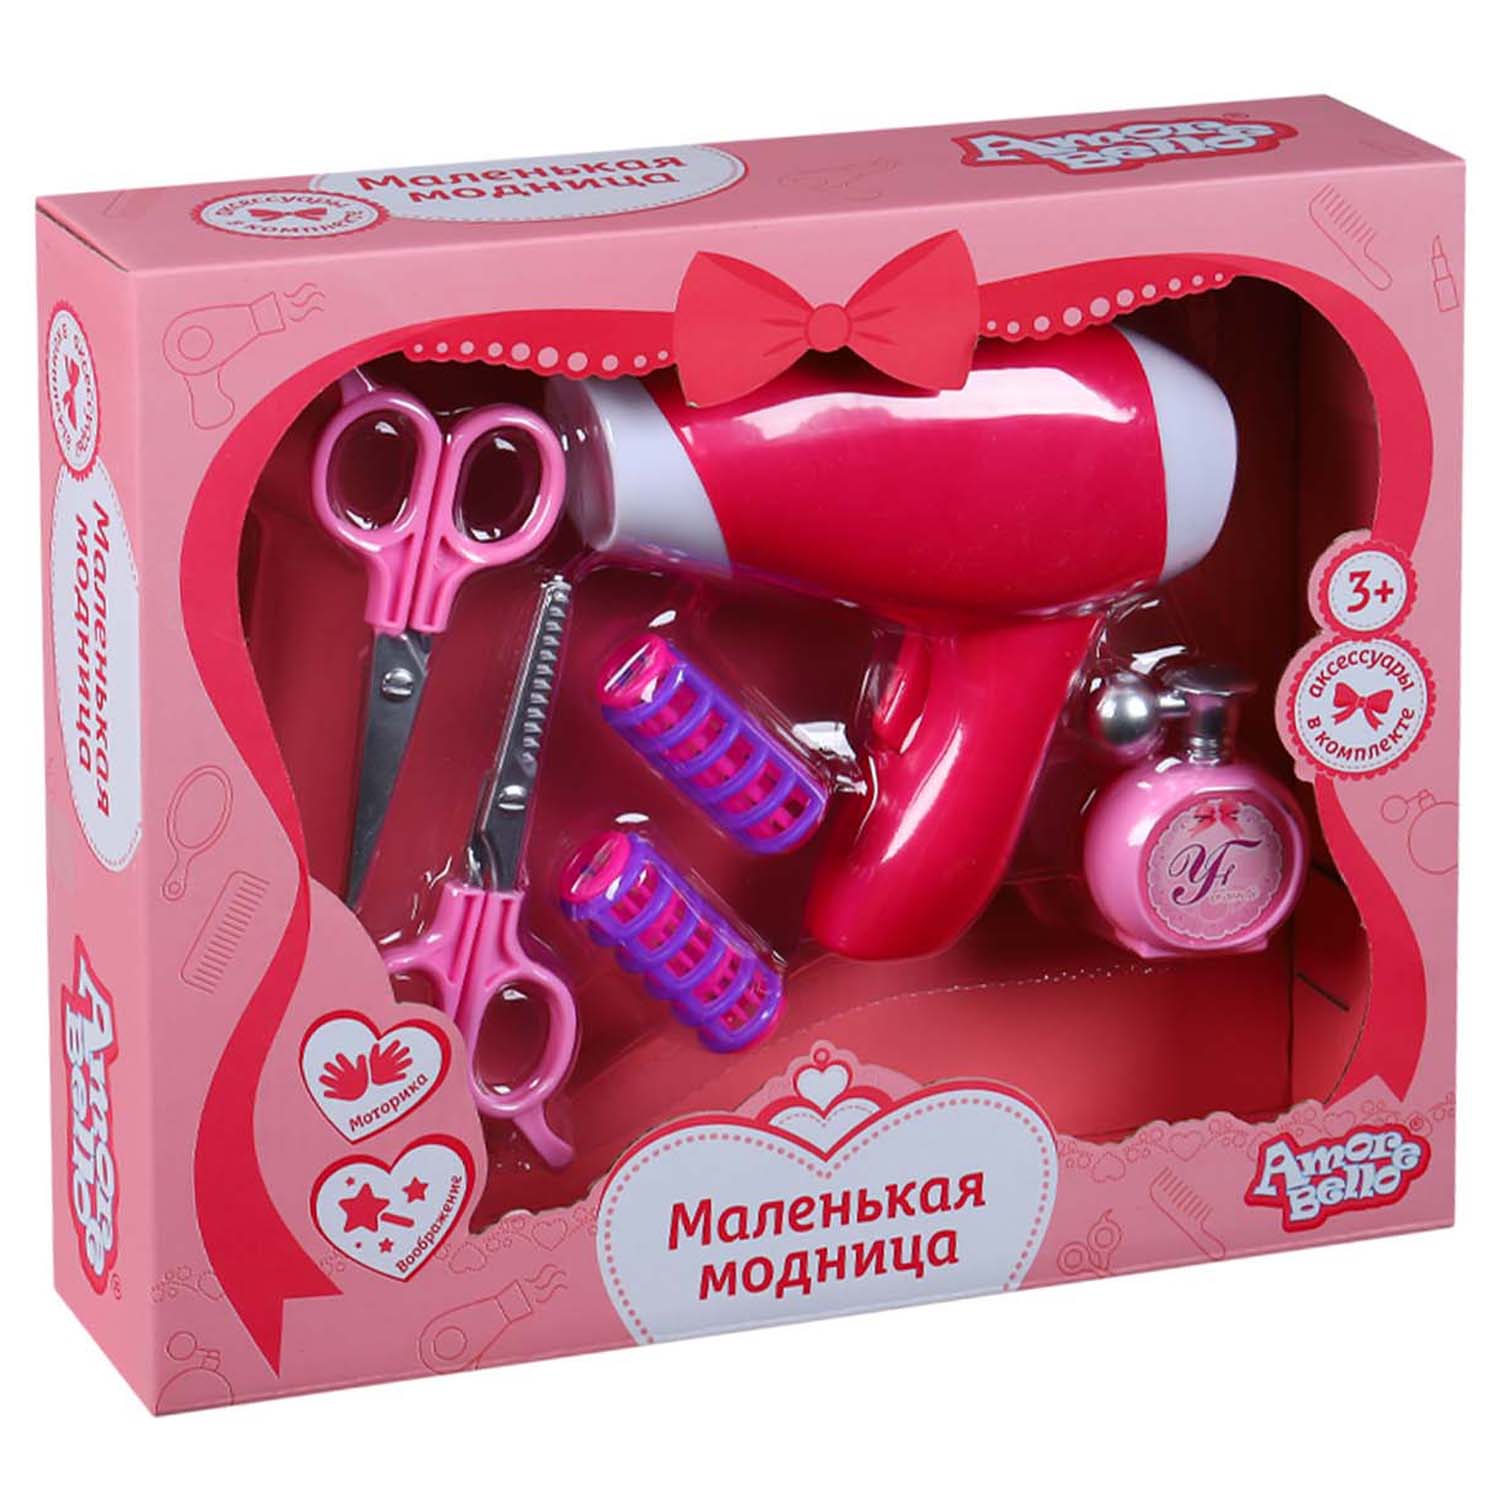 Игровой набор детский для девочек Amore Bello Модница, на батарейках, JB0208727